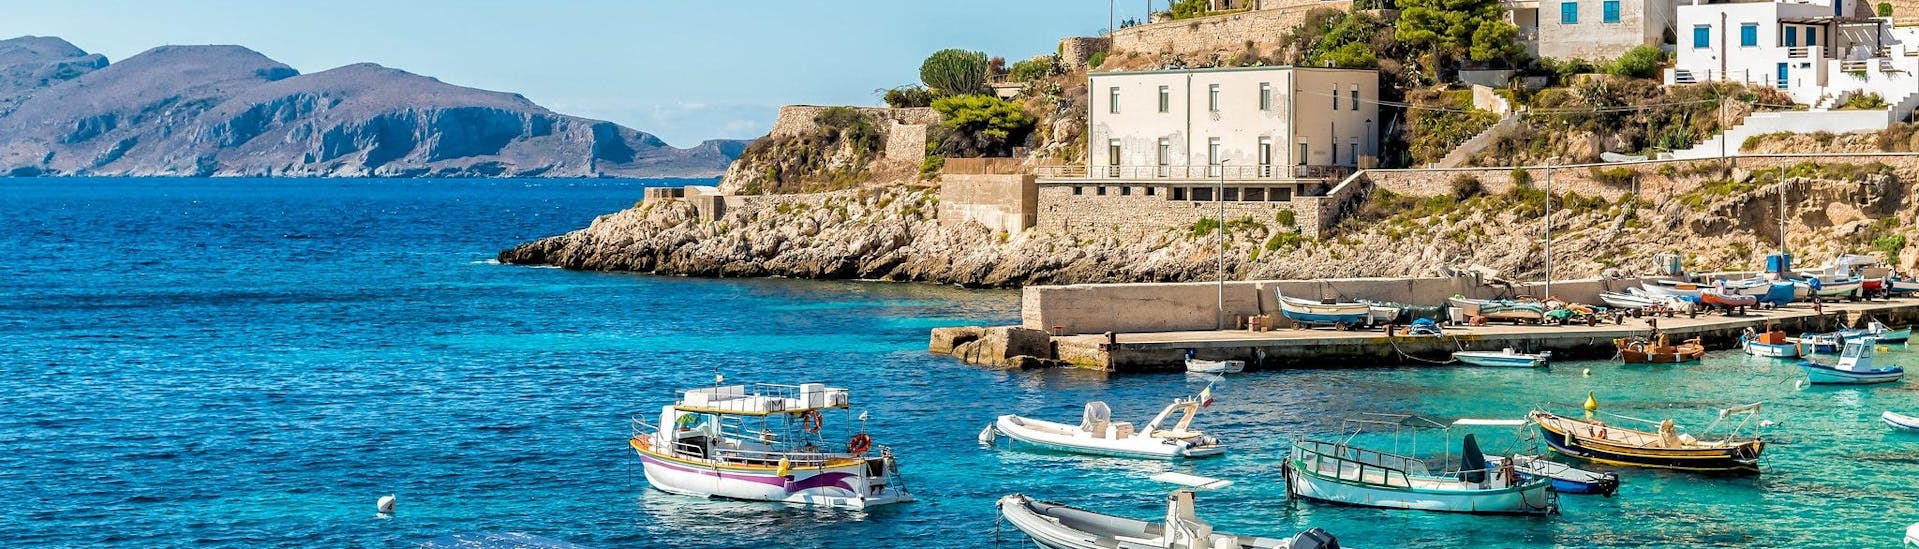 Vista dell'isola di Levanzo, che è una destinazione popolare per le gite in barca da Trapani in Sicilia.